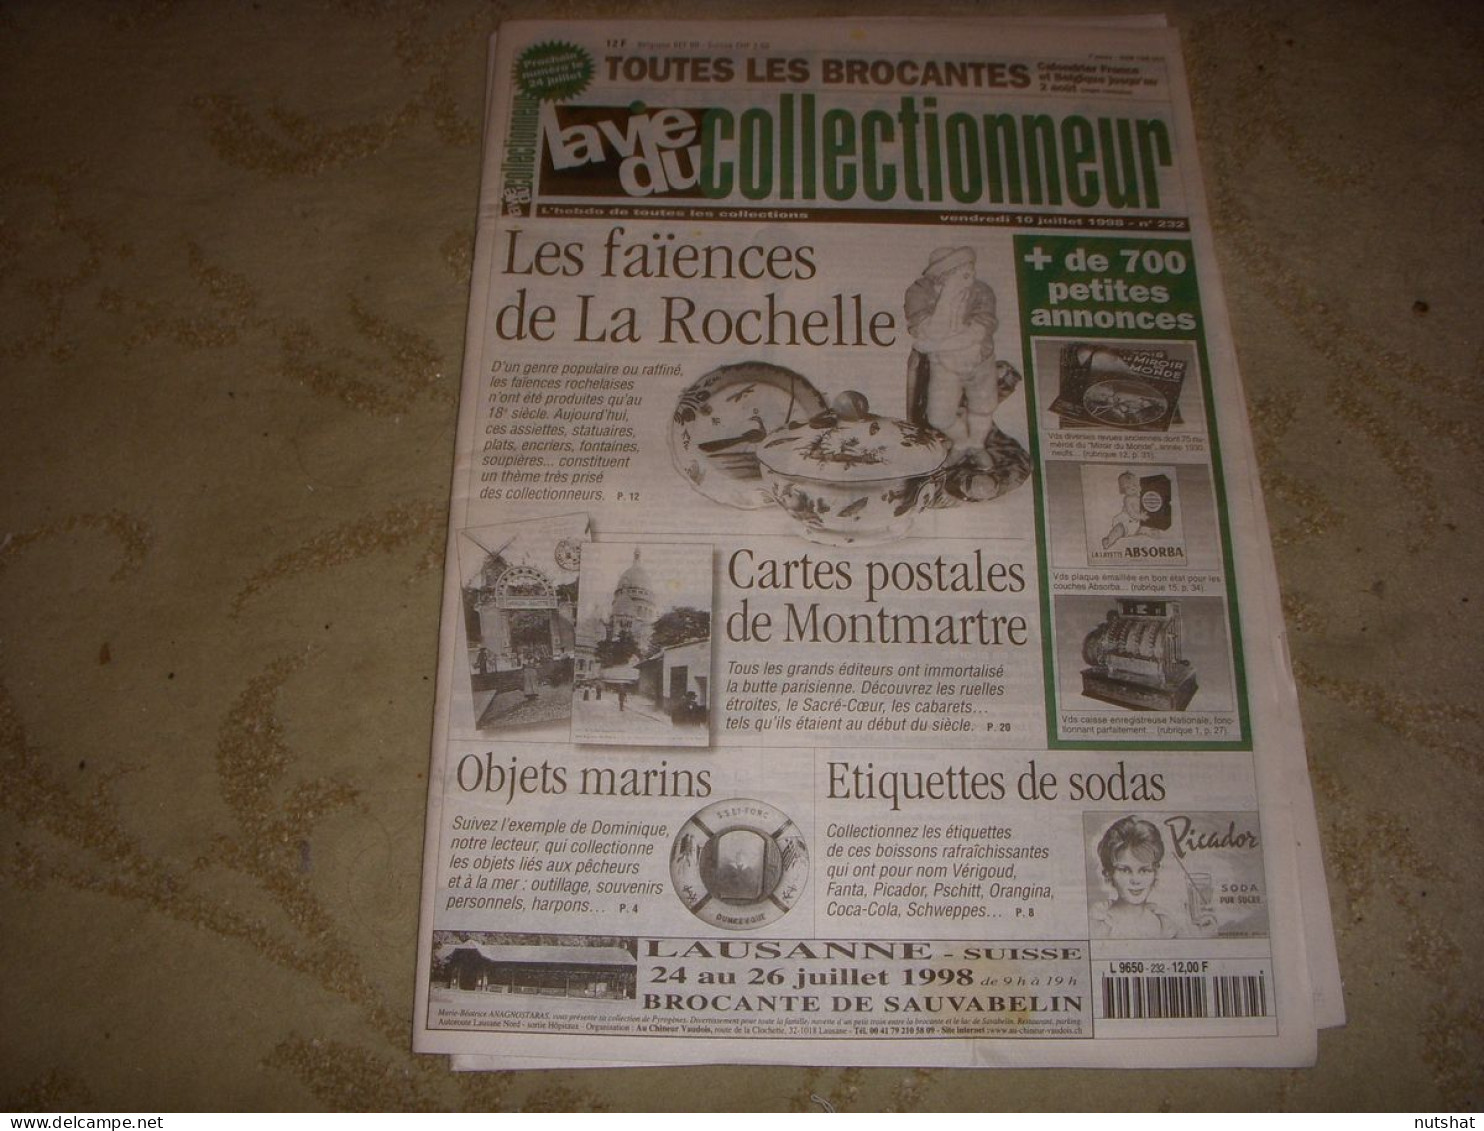 LVC VIE Du COLLECTIONNEUR 232 10.07.1998 FAIENCES LA ROCHELLE ETIQUETTE SODA  - Collectors